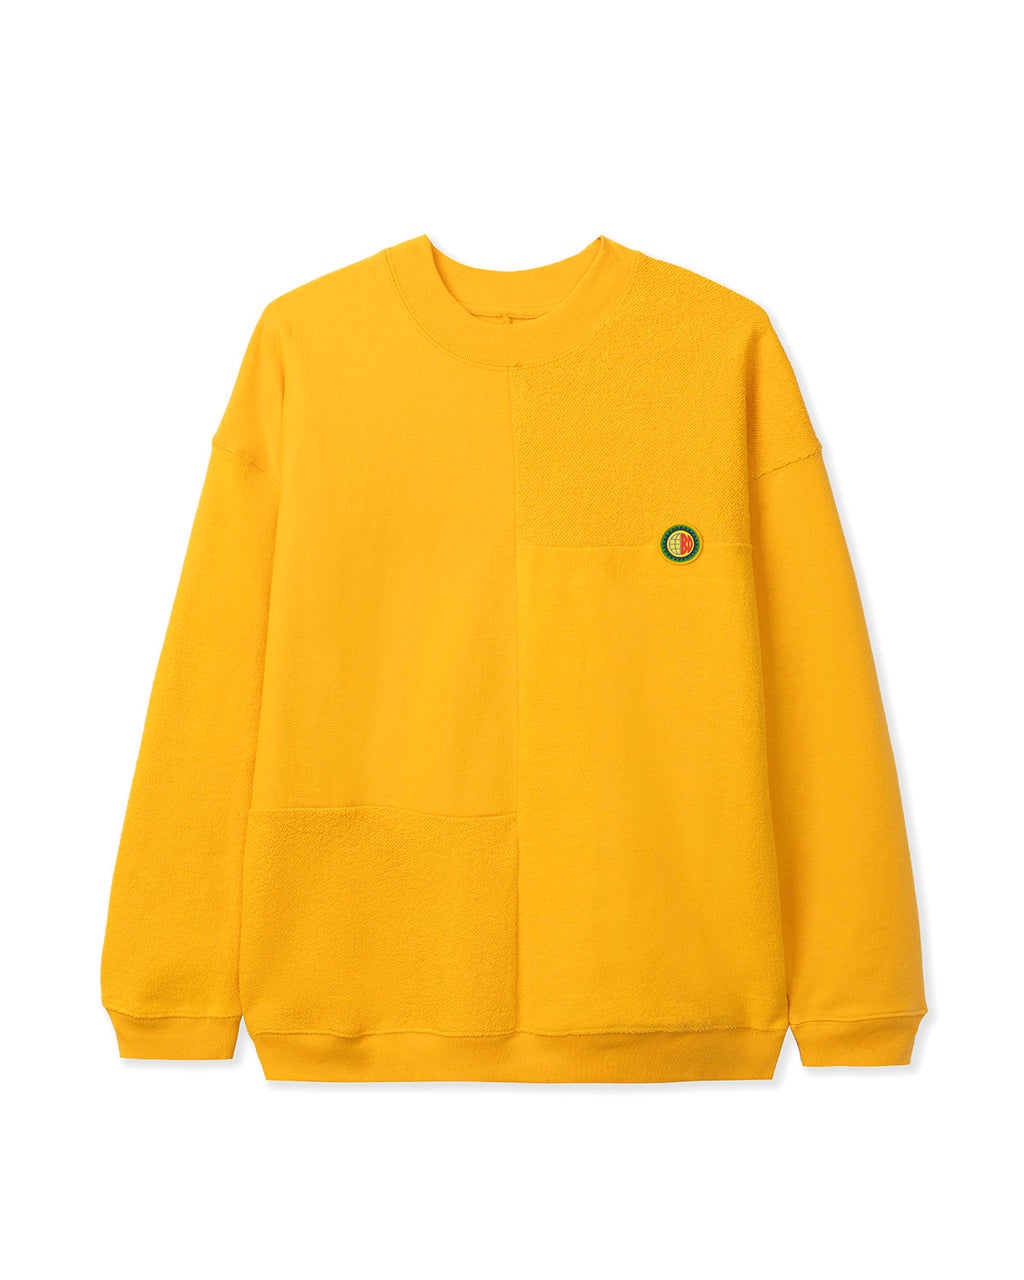 Global Works Split Panel Fleece & Terry Crewneck Sweatshirt - Yellow